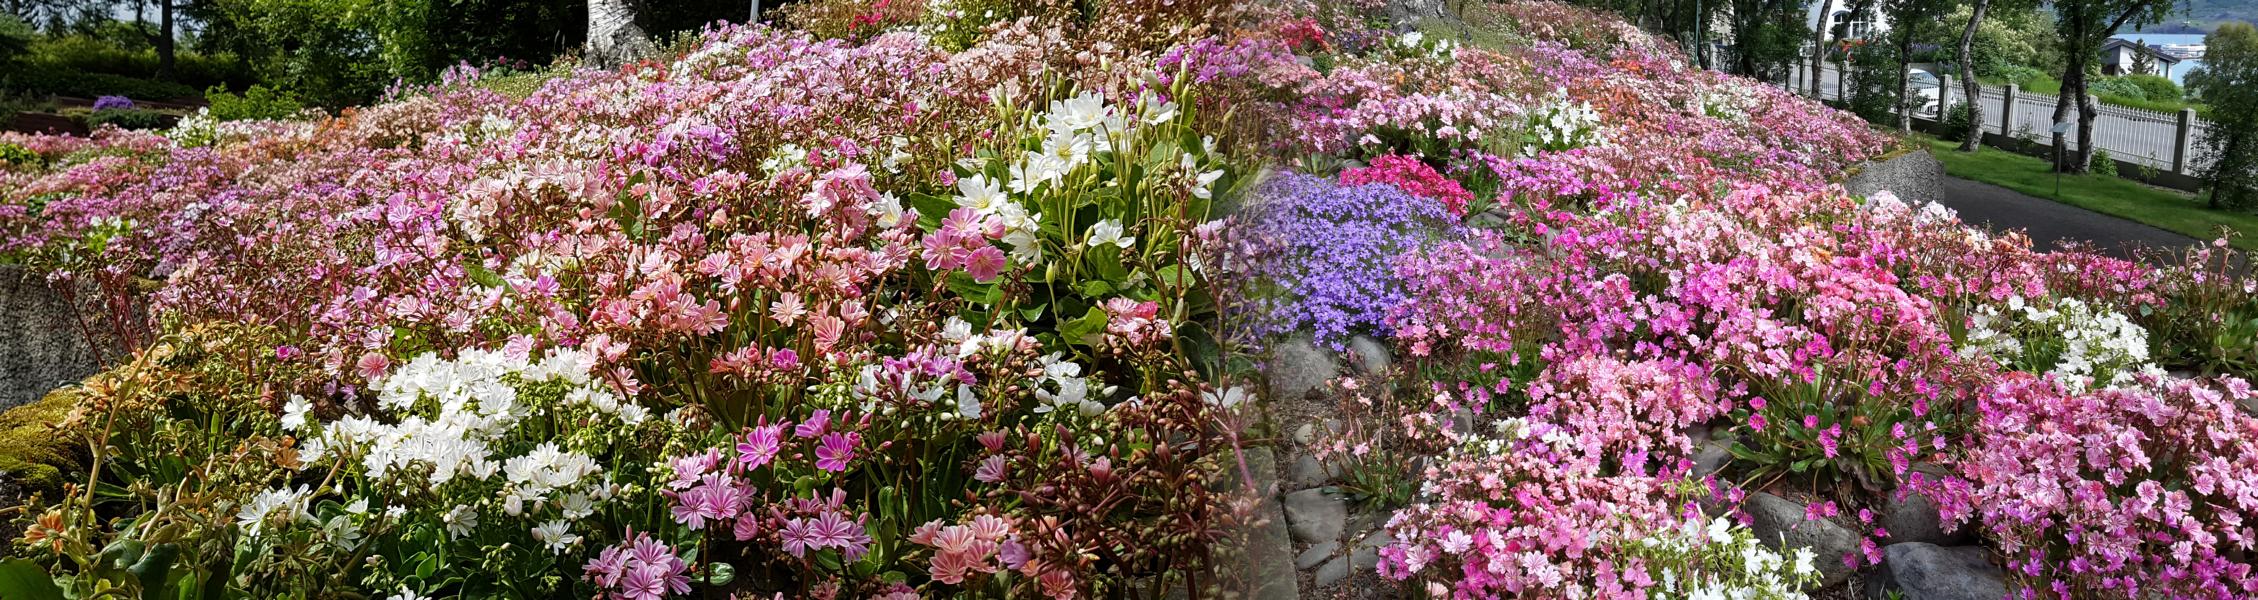 Blumenbeet am Rande des Bot. Gartens von Akureyri